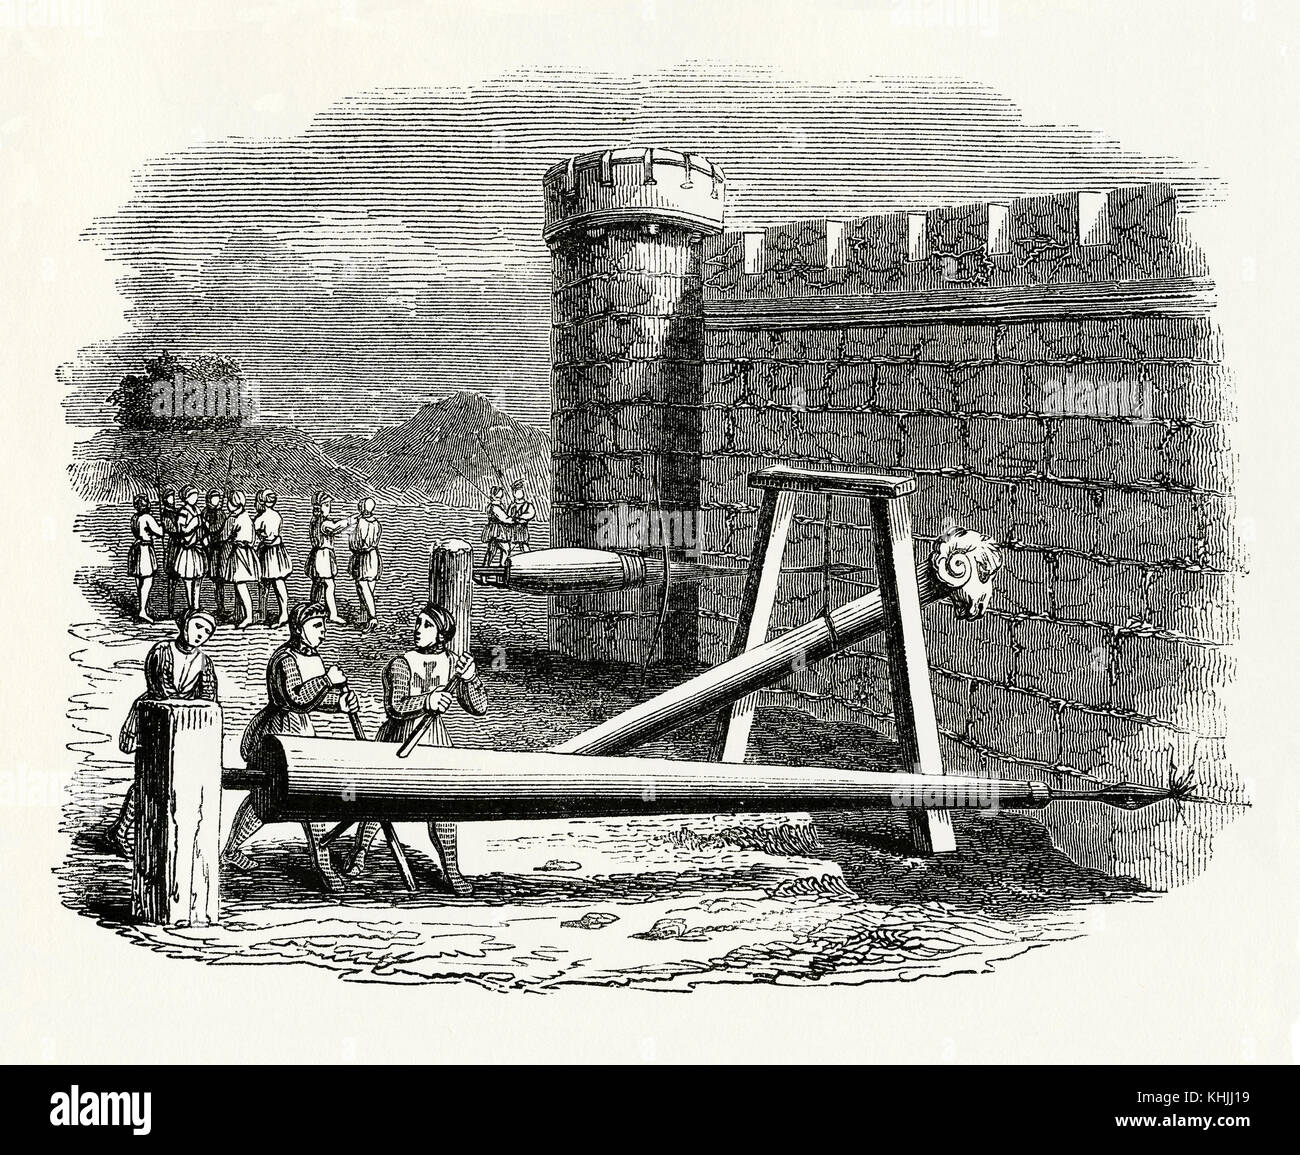 Ein alter Gravur, der die Schlachtszene aus dem Mittelalter darstellt - er zeigt Maschinen oder Geräte, die beim Angriff auf die Burgmauern verwendet wurden - hier schlagen Widder. Das Gerät im Vordergrund dient zum Durchstechen und Bohren von Löchern in der Wand. Der hölzerne Rammbock ist auf einem Drehpunkt und hat einen Rammkopf. Stockfoto